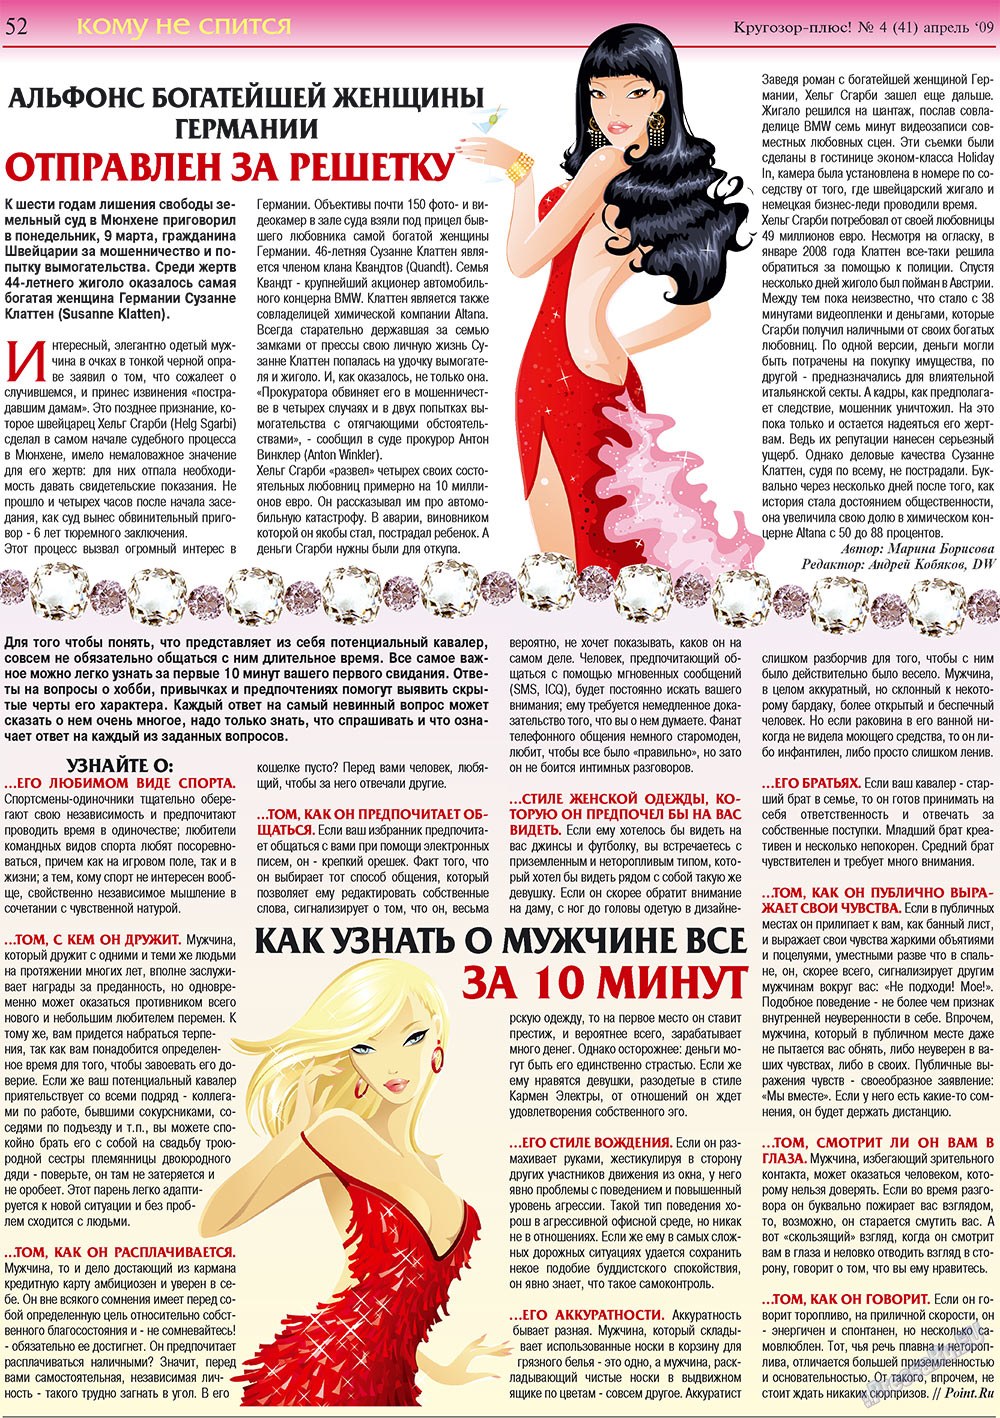 Кругозор плюс!, газета. 2009 №4 стр.52